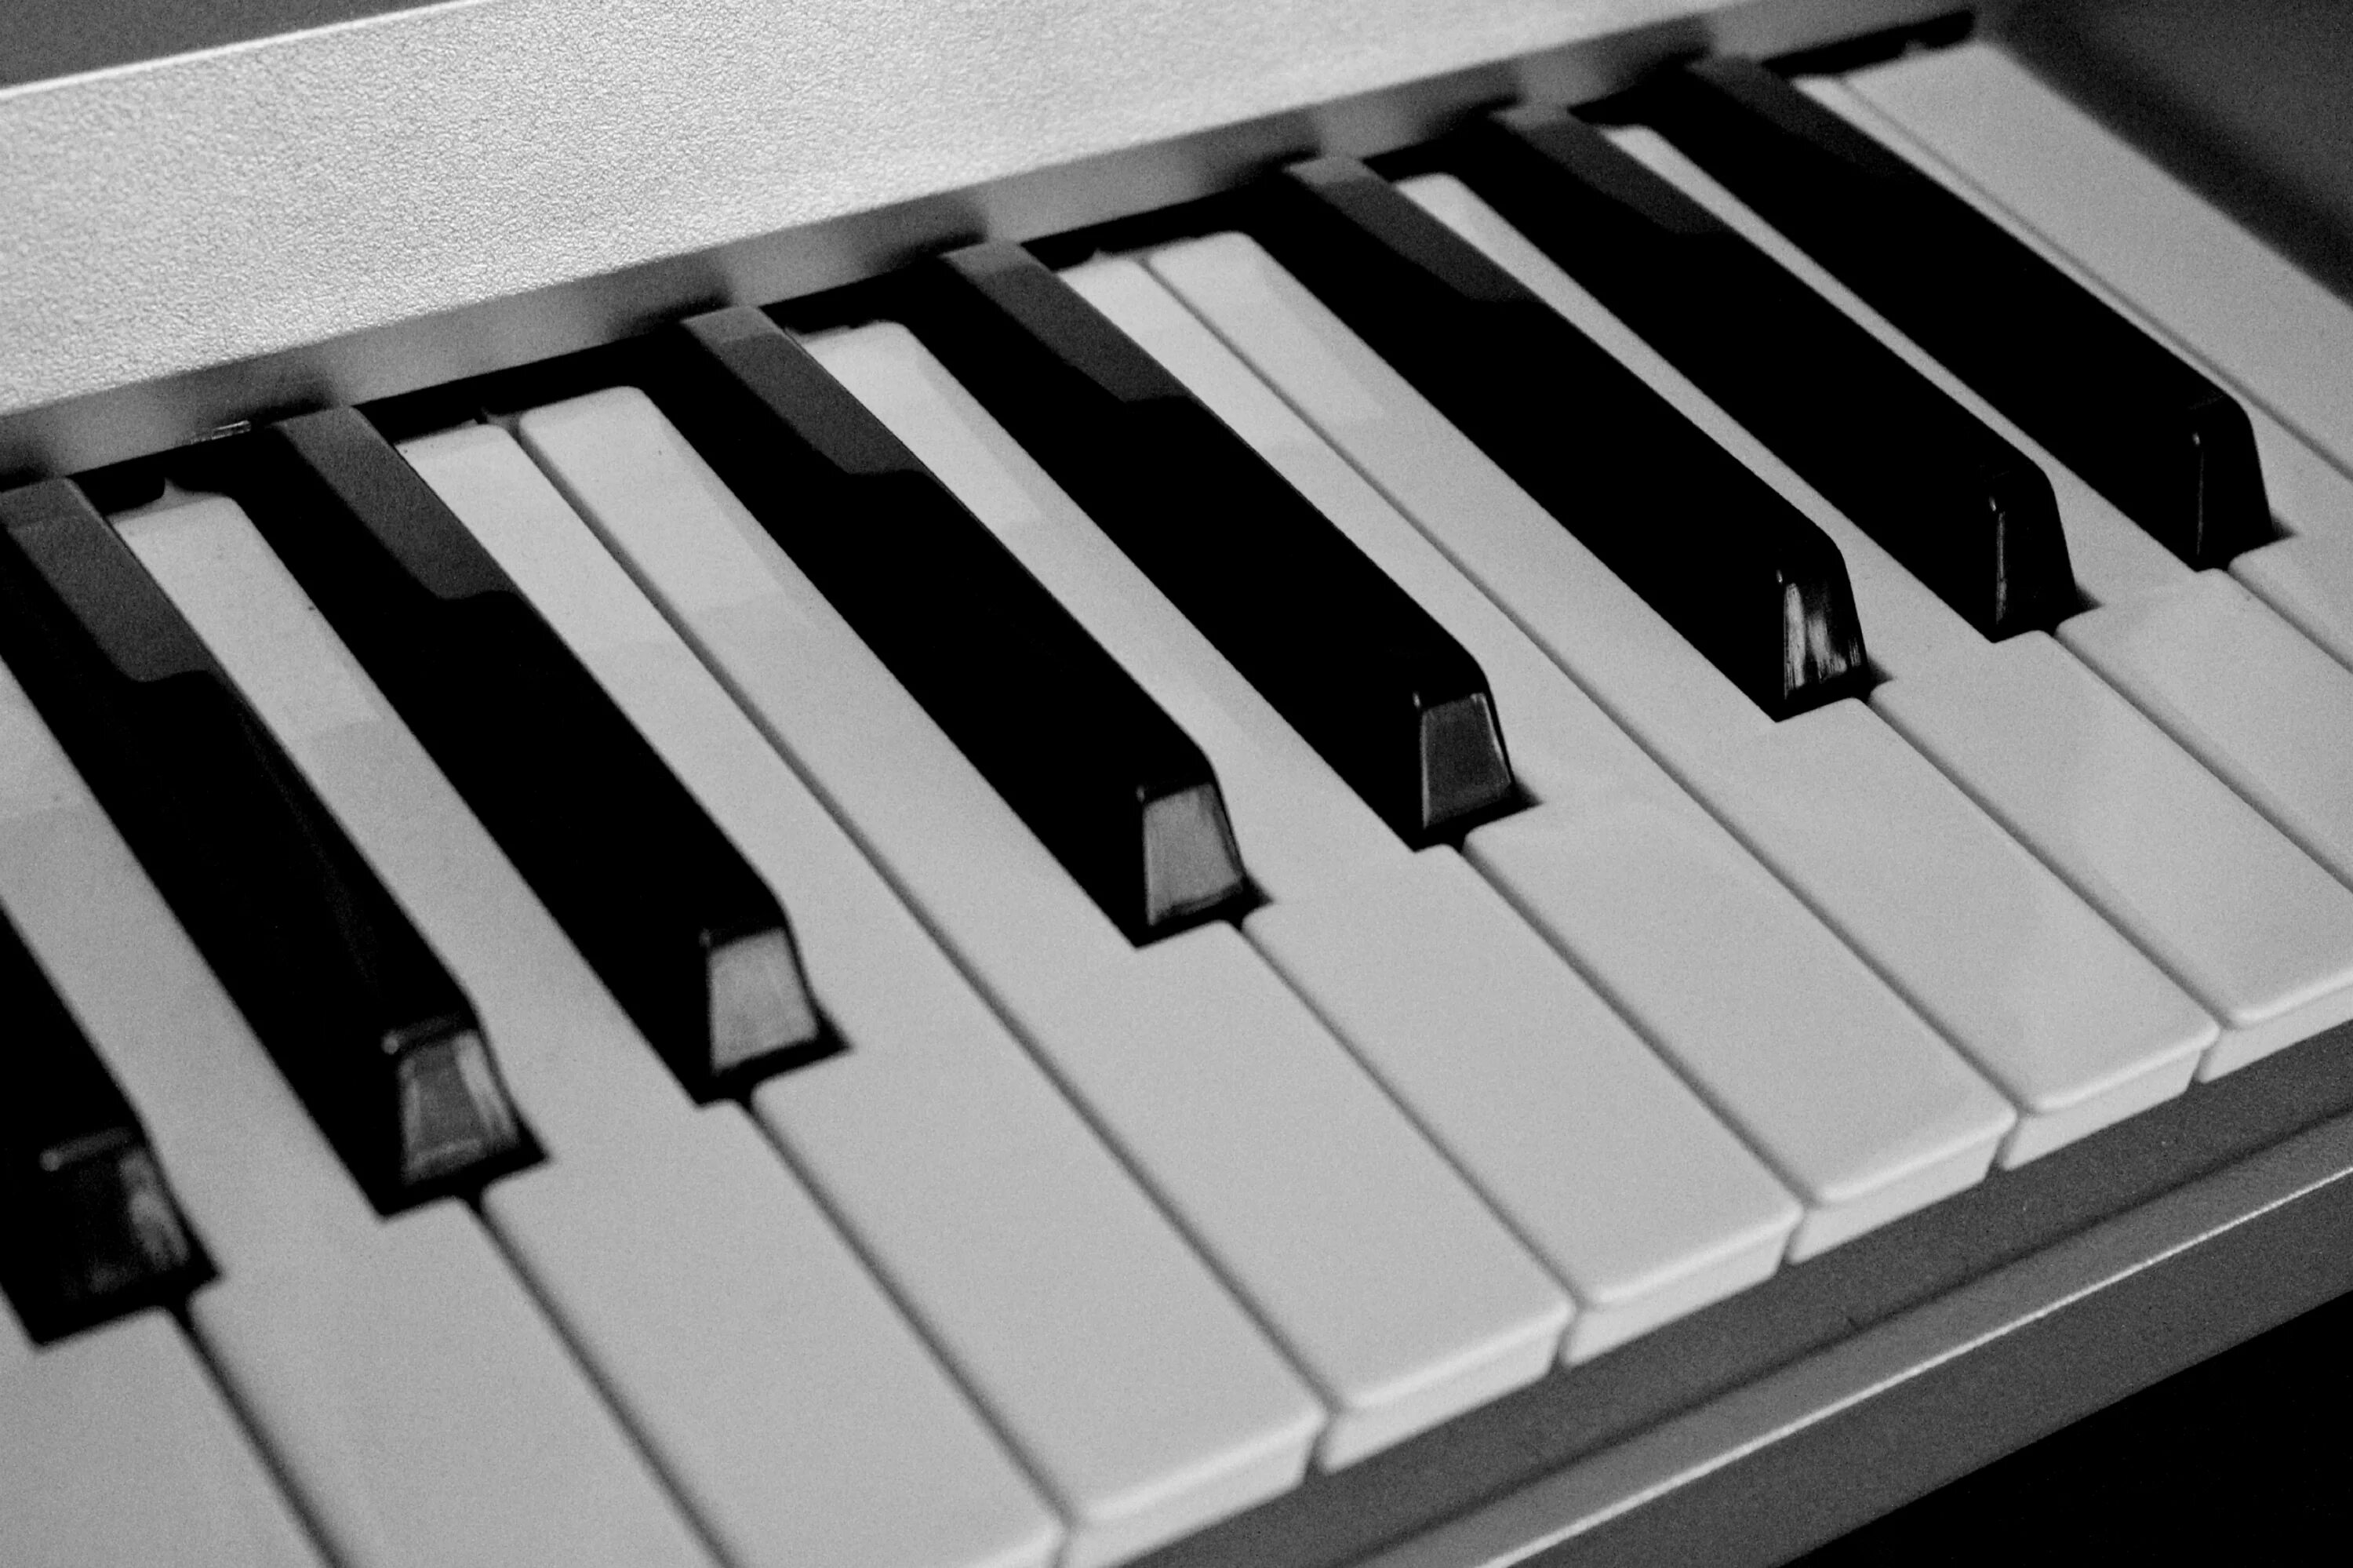 Клавиши пианино. Клавиатура рояля. Клавиатура пианино. Клавиши рояля. Фортепиано белые клавиши